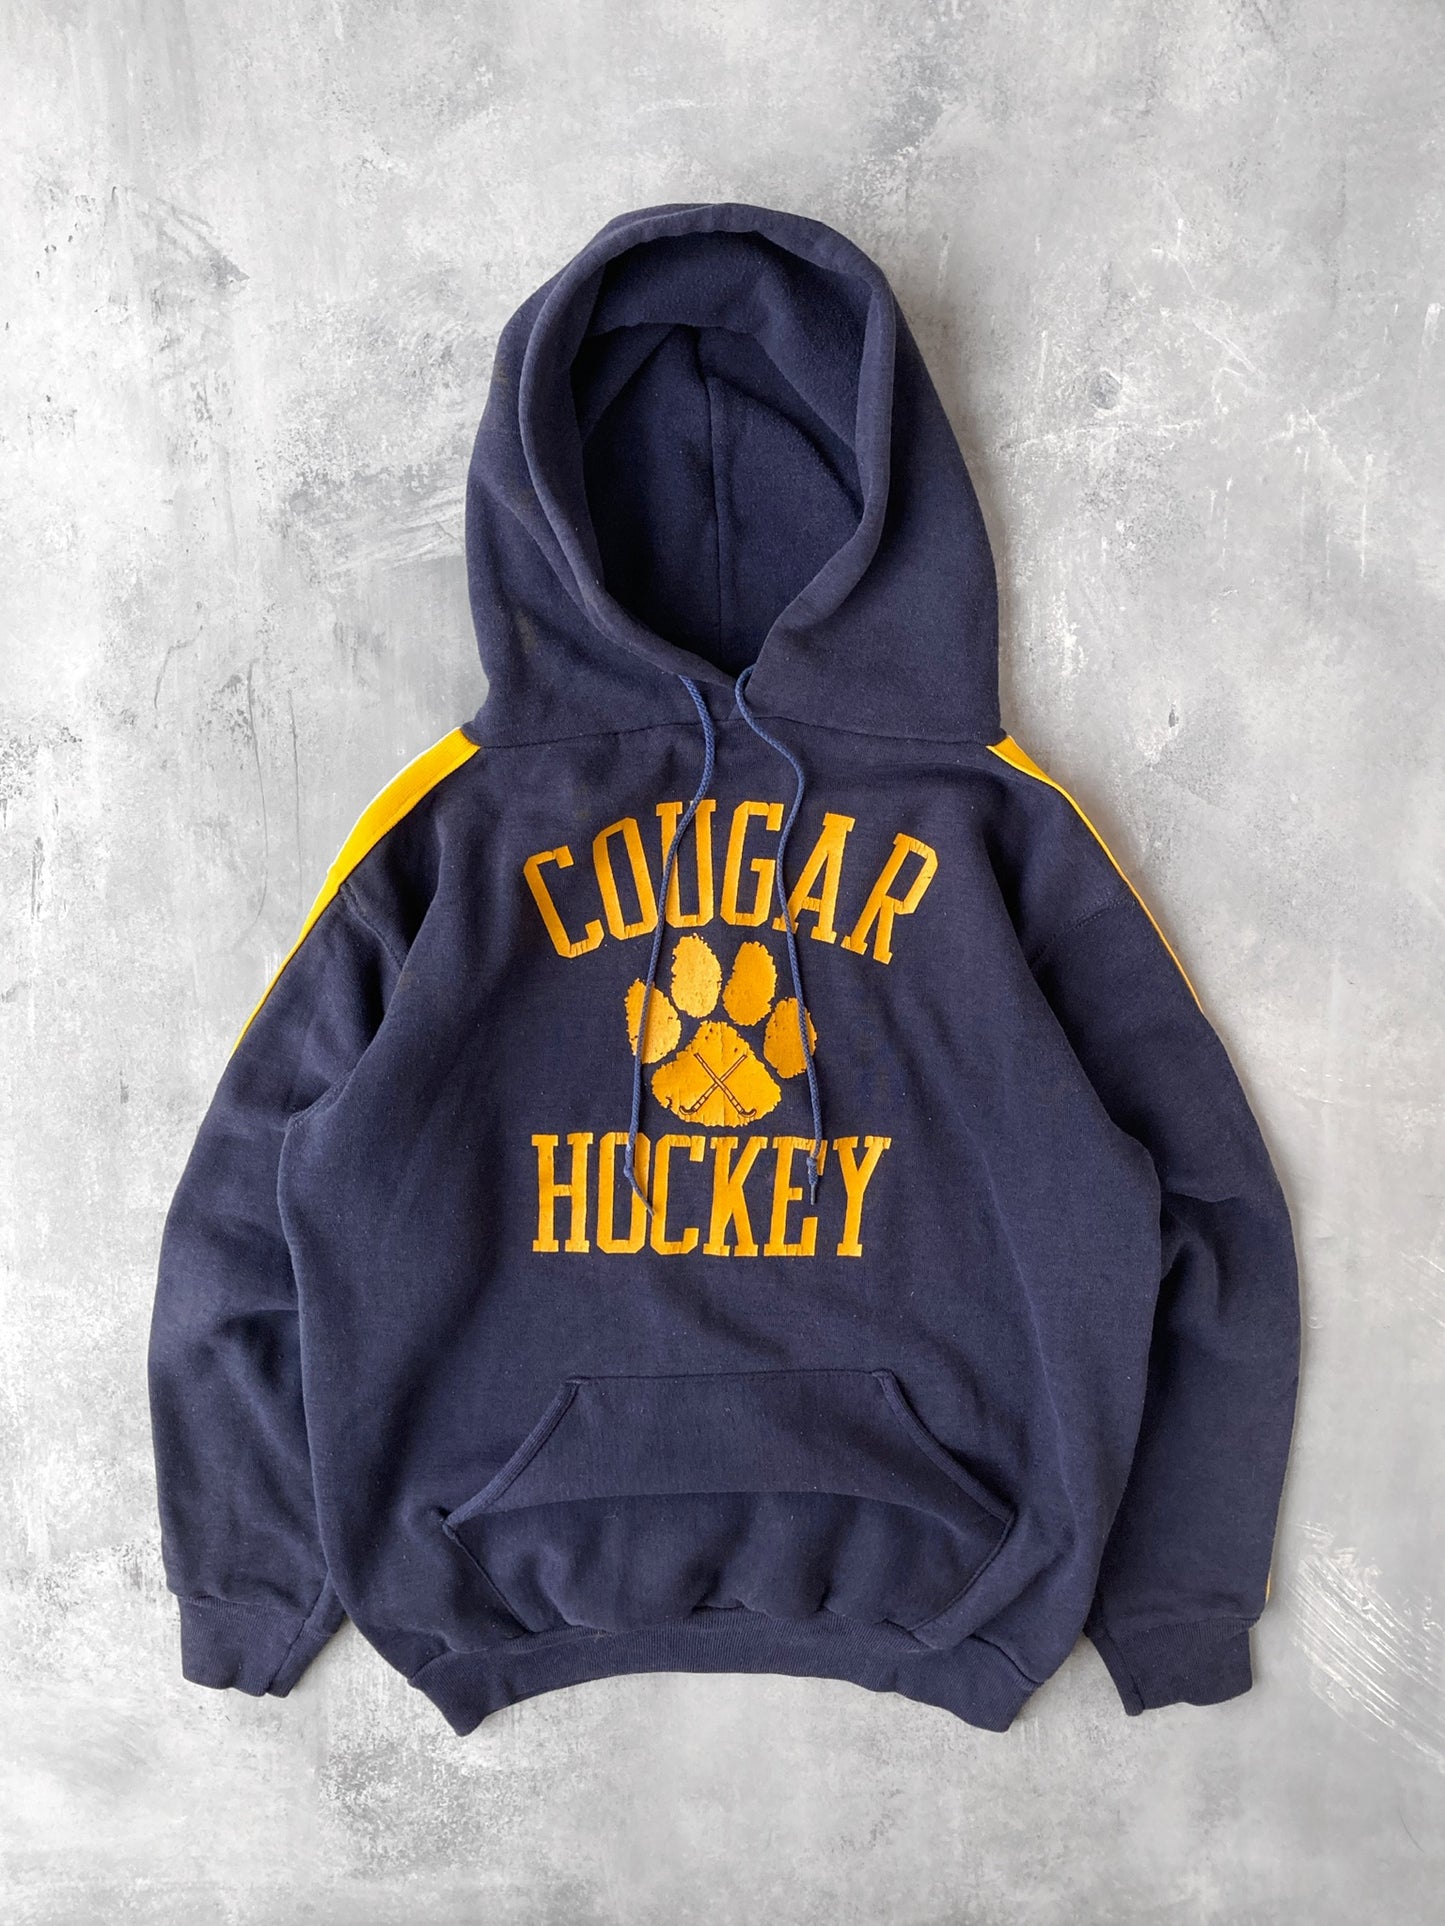 Cougar Hockey Hoodie 90's - Medium